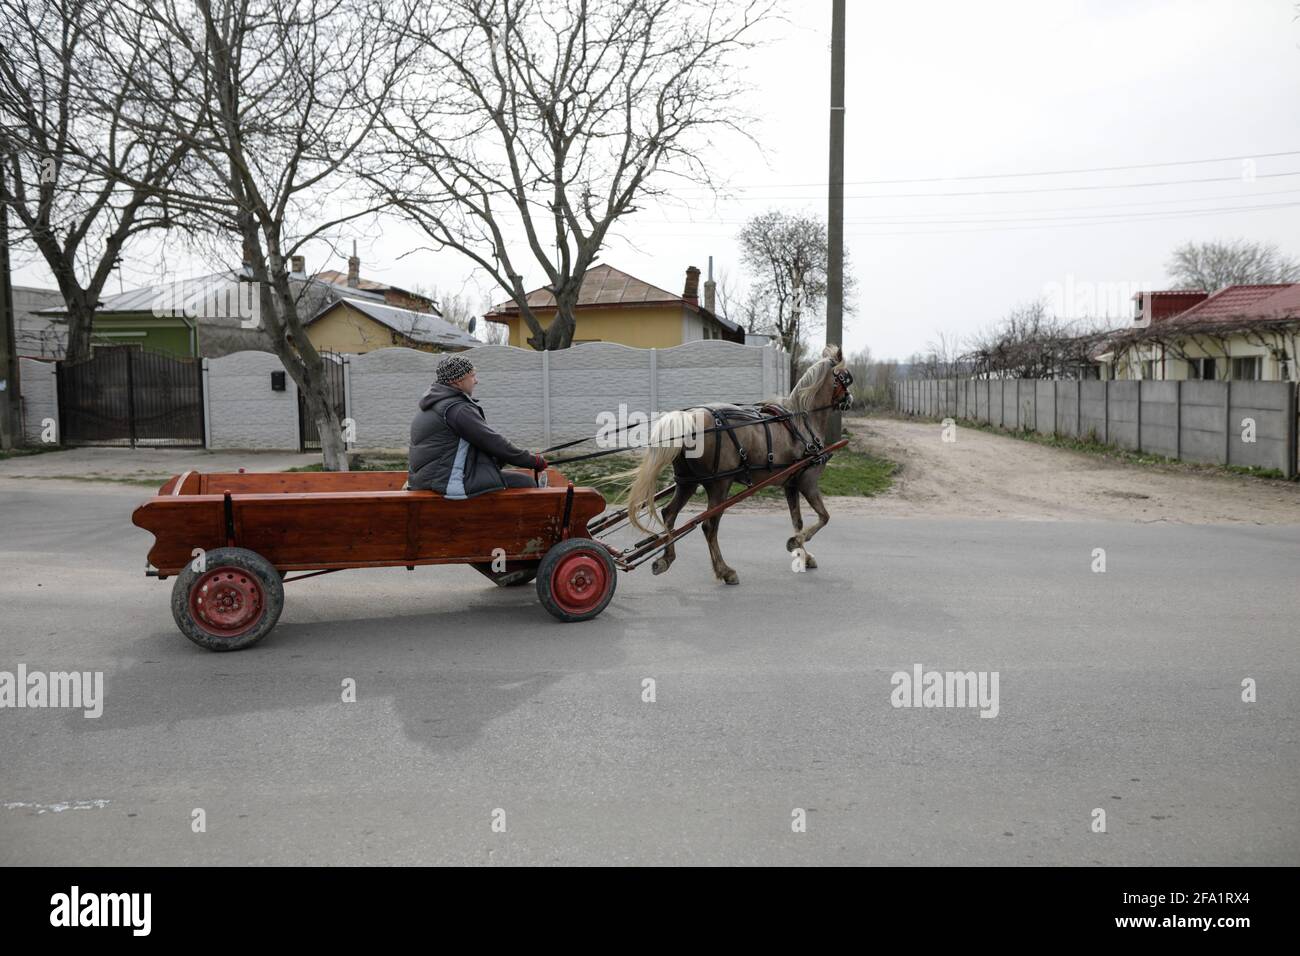 Sintesti, Romania - 2 aprile 2021: L'uomo guida un carro trainato da cavalli su una strada pubblica. Foto Stock